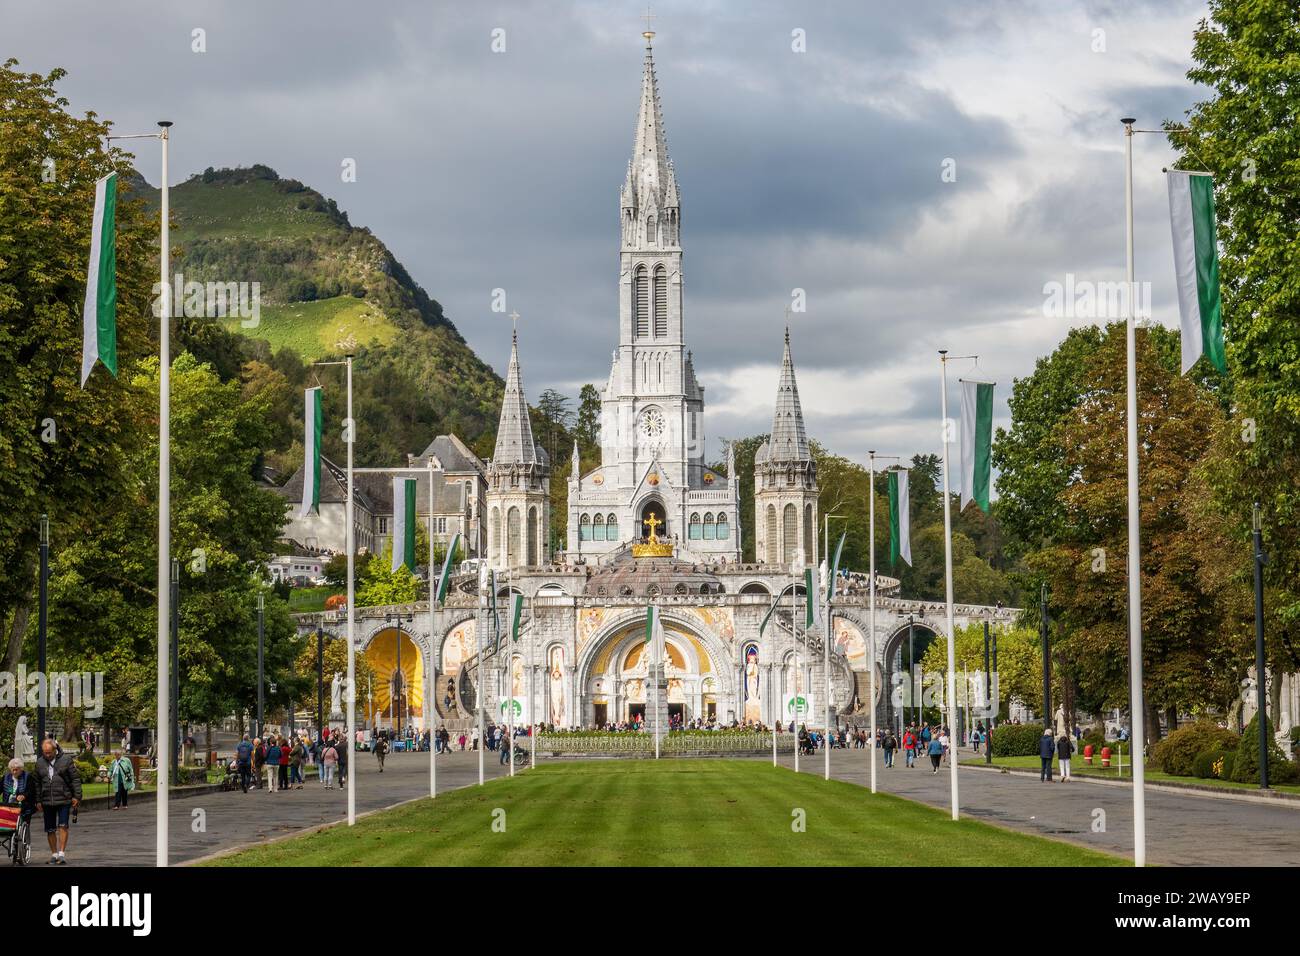 Sanctuary of Our Lady of Lourdes, the Rosary Basilica. Catholic Marian shrine and pilgrimage site dedicated to Our Lady of Lourdes in Lourdes, France. Stock Photo